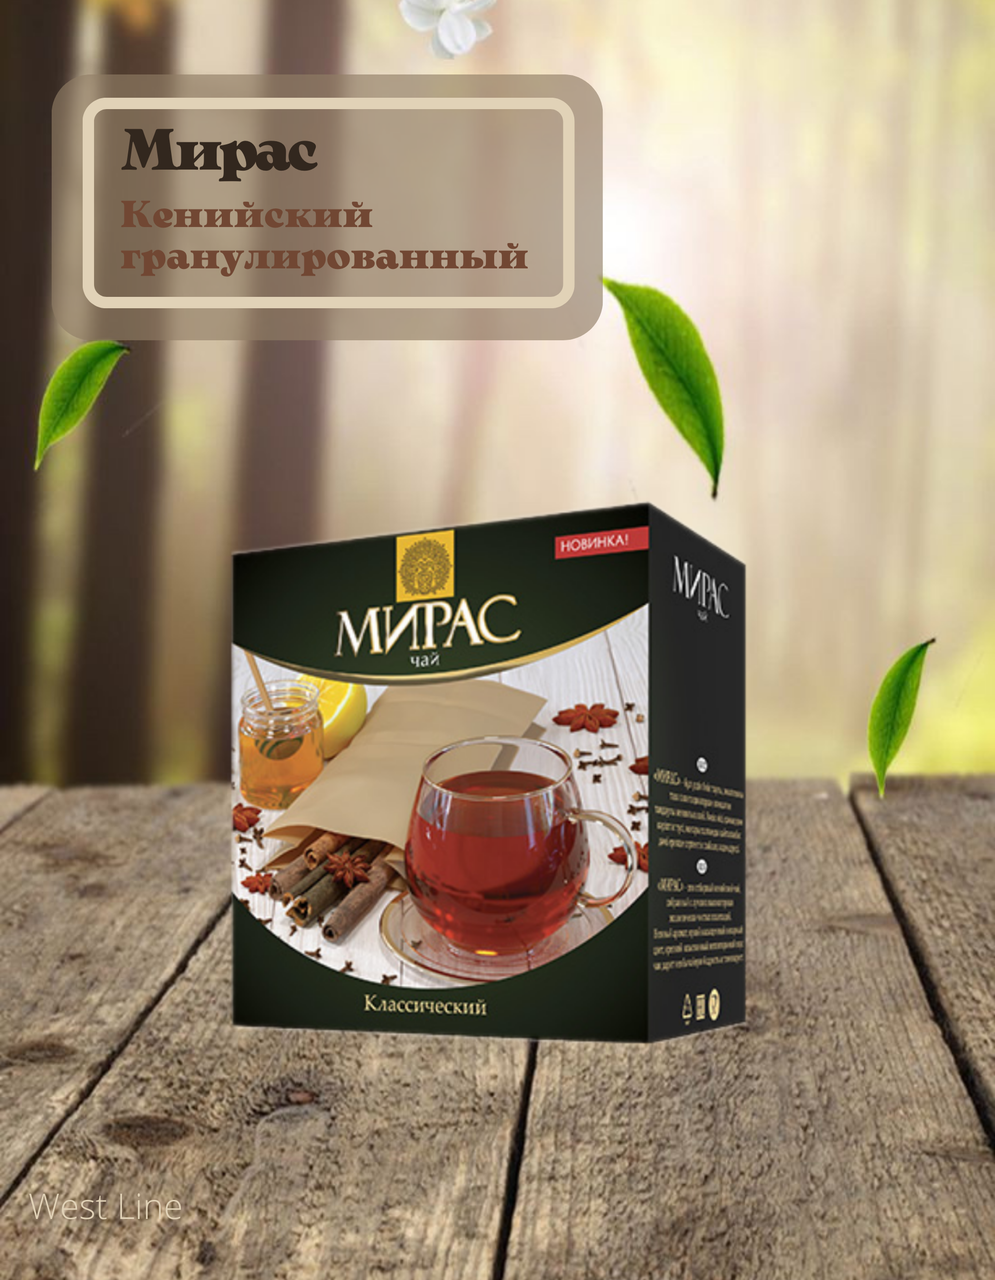 Чай Мирас кенийский гранулированный  250 г.